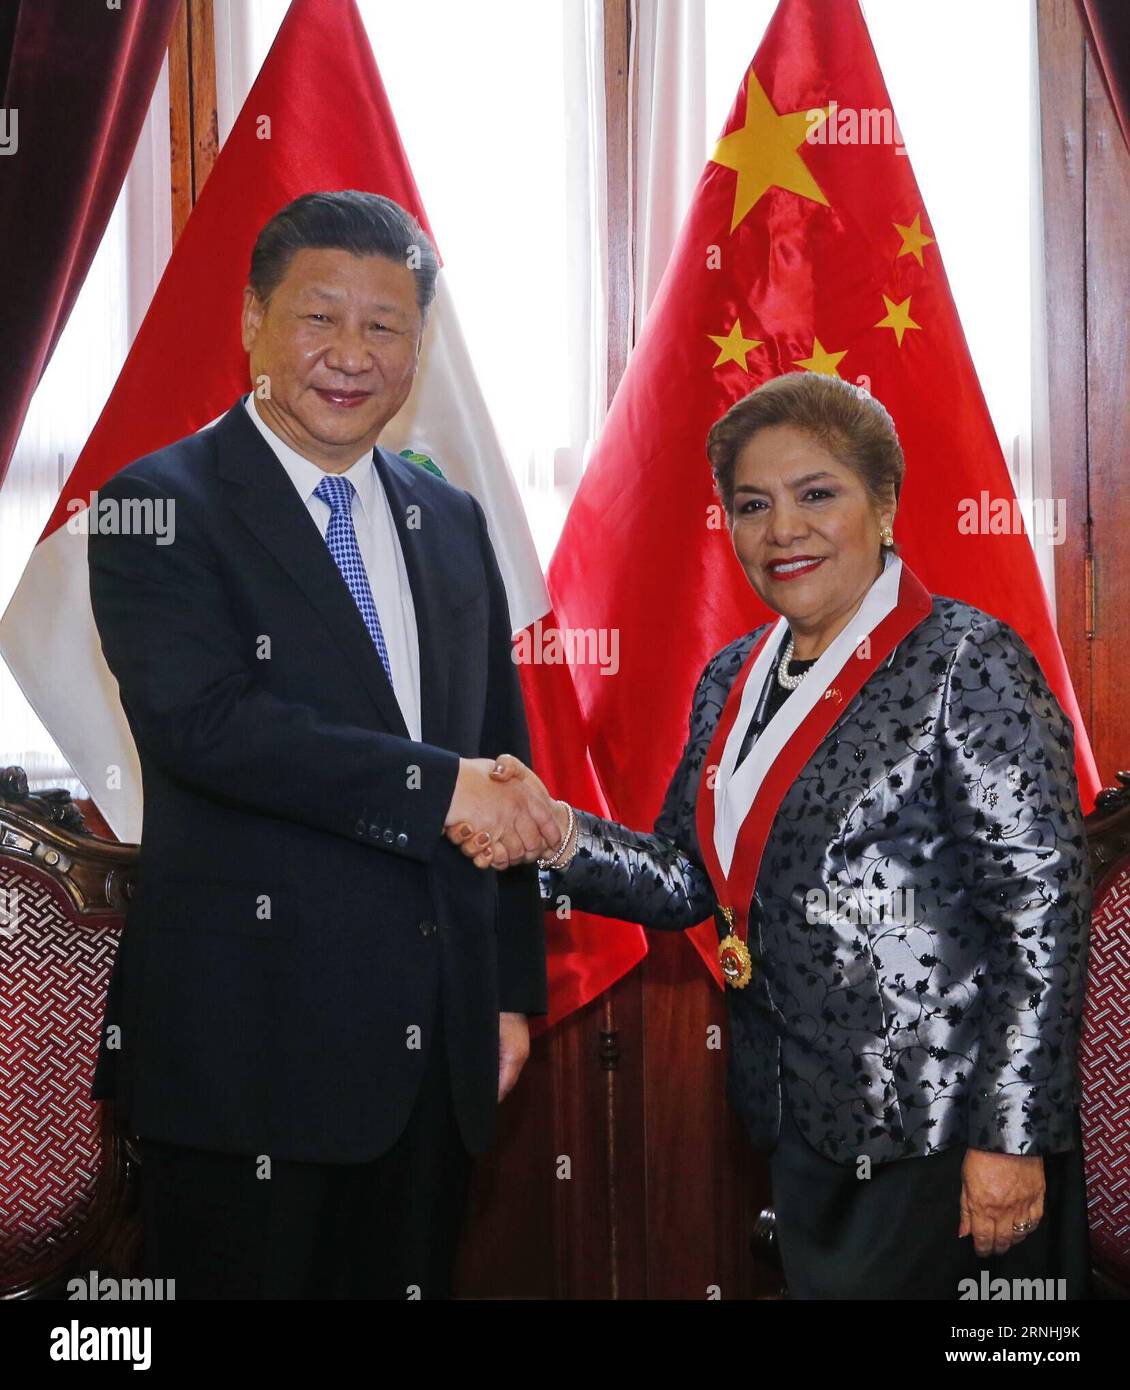 (161121) -- LIMA, le 21 novembre 2016 -- le président chinois Xi Jinping (à gauche) rencontre le président du Congrès péruvien Luz Salgado à Lima, capitale du Pérou, le 21 novembre 2016.) (Zyd) PÉROU-CHINE-XI JINPING-SALGADO-MEETING JuxPeng PUBLICATIONxNOTxINxCHN Lima novembre 21 2016 le président chinois Xi Jinping l rencontre le président du Congrès péruvien Luz Salgado à Lima capitale du Pérou novembre 21 2016 ZYD Pérou Chine Xi Jinping Salgado Réunion JuxPeng PUBLICATIONxNOTxINxCHN Banque D'Images